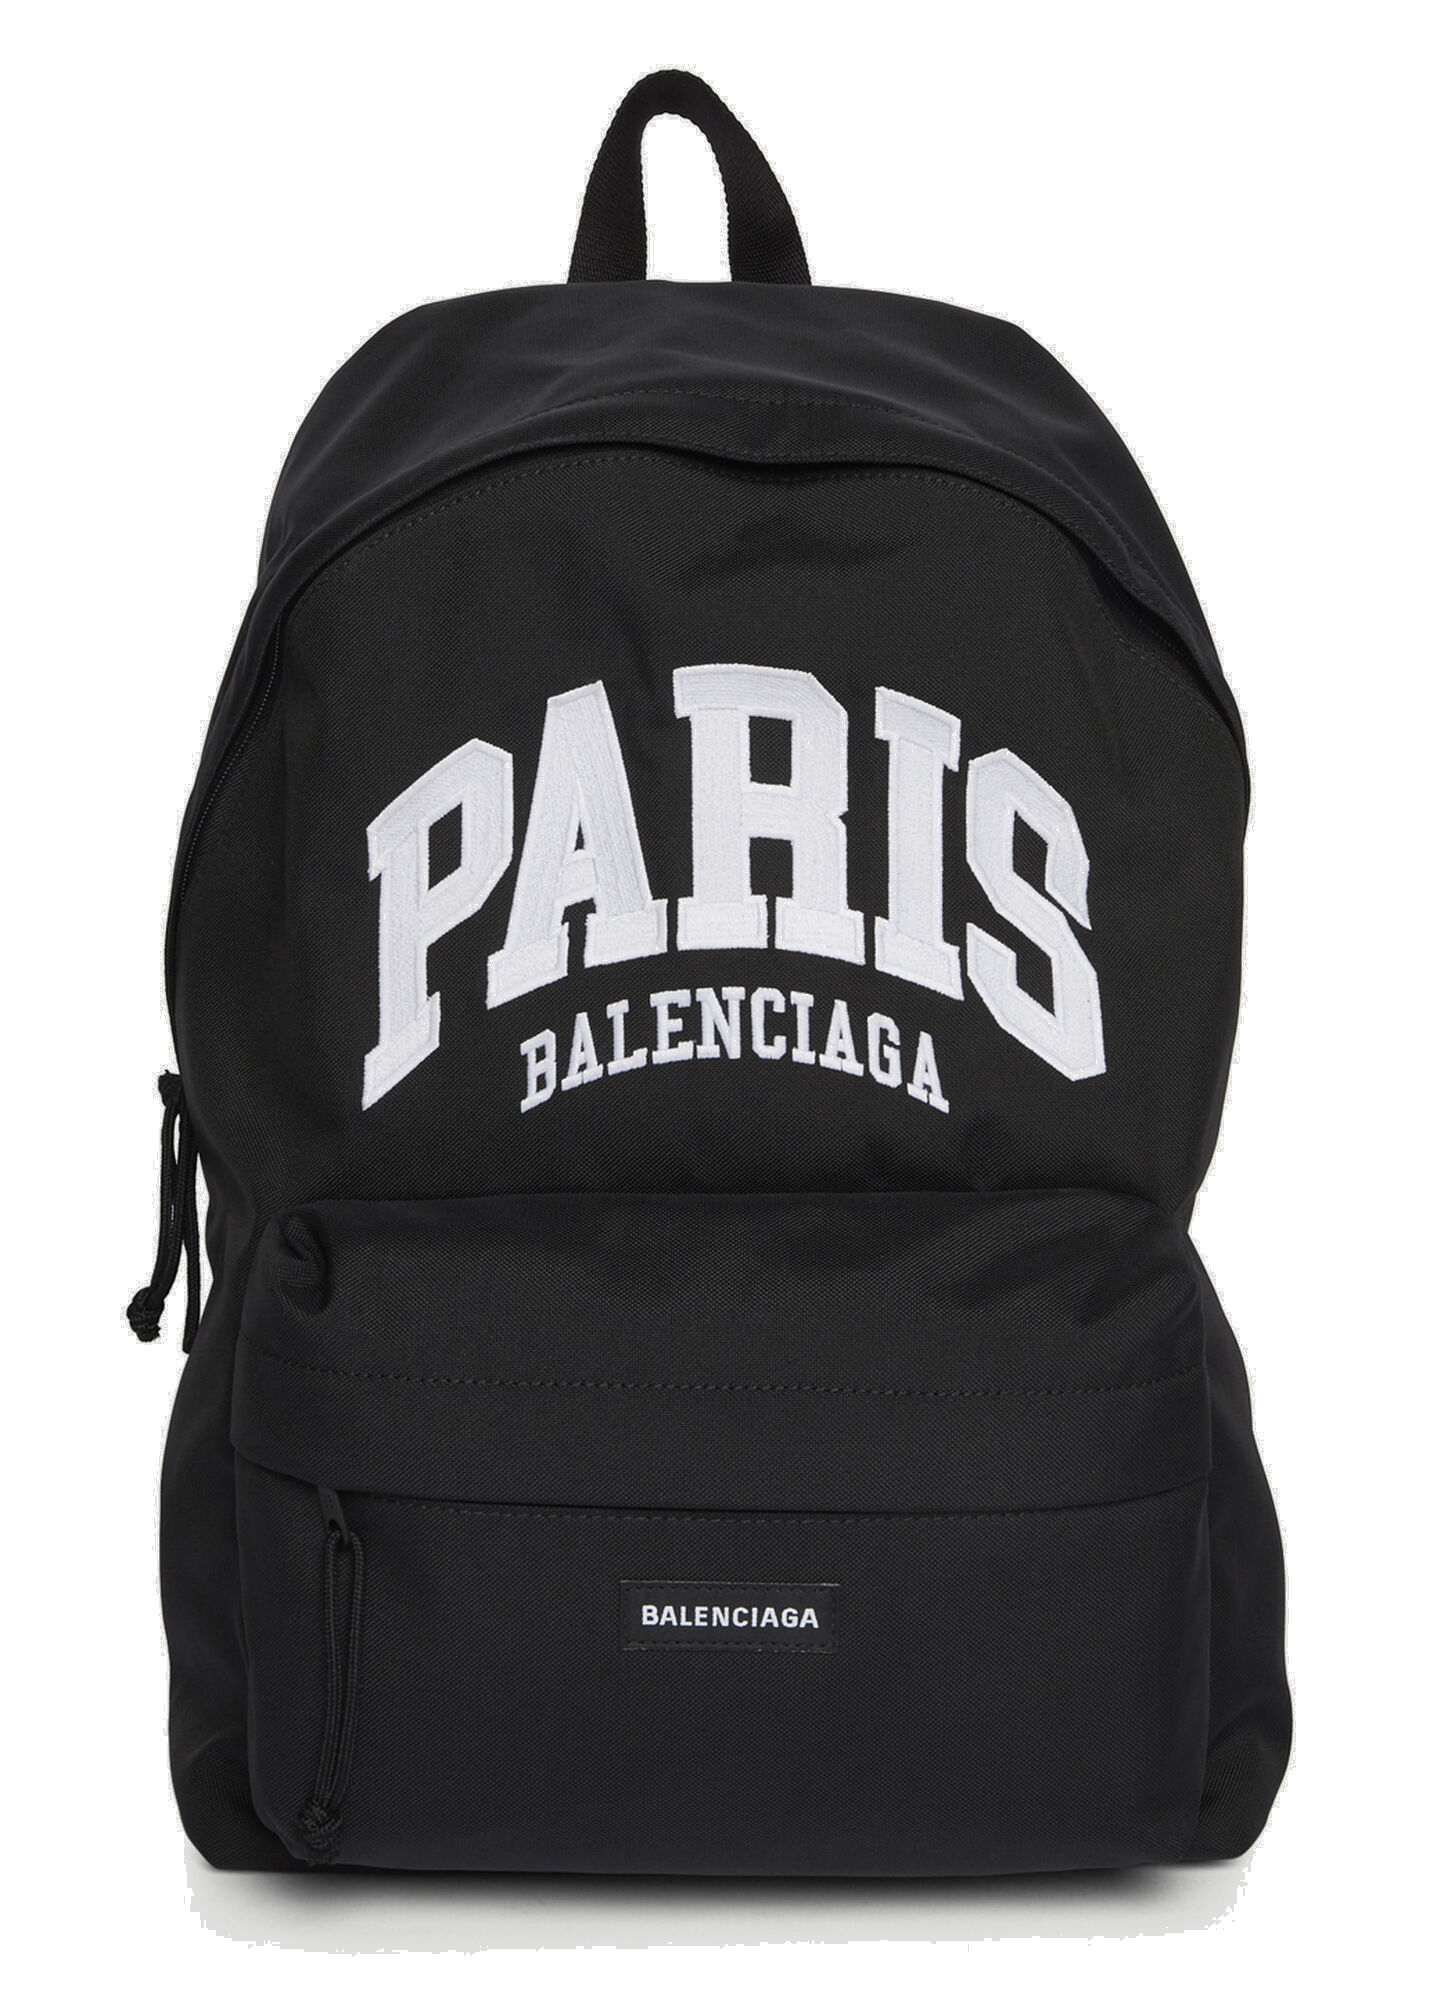 Explorer Backpack in Black Balenciaga